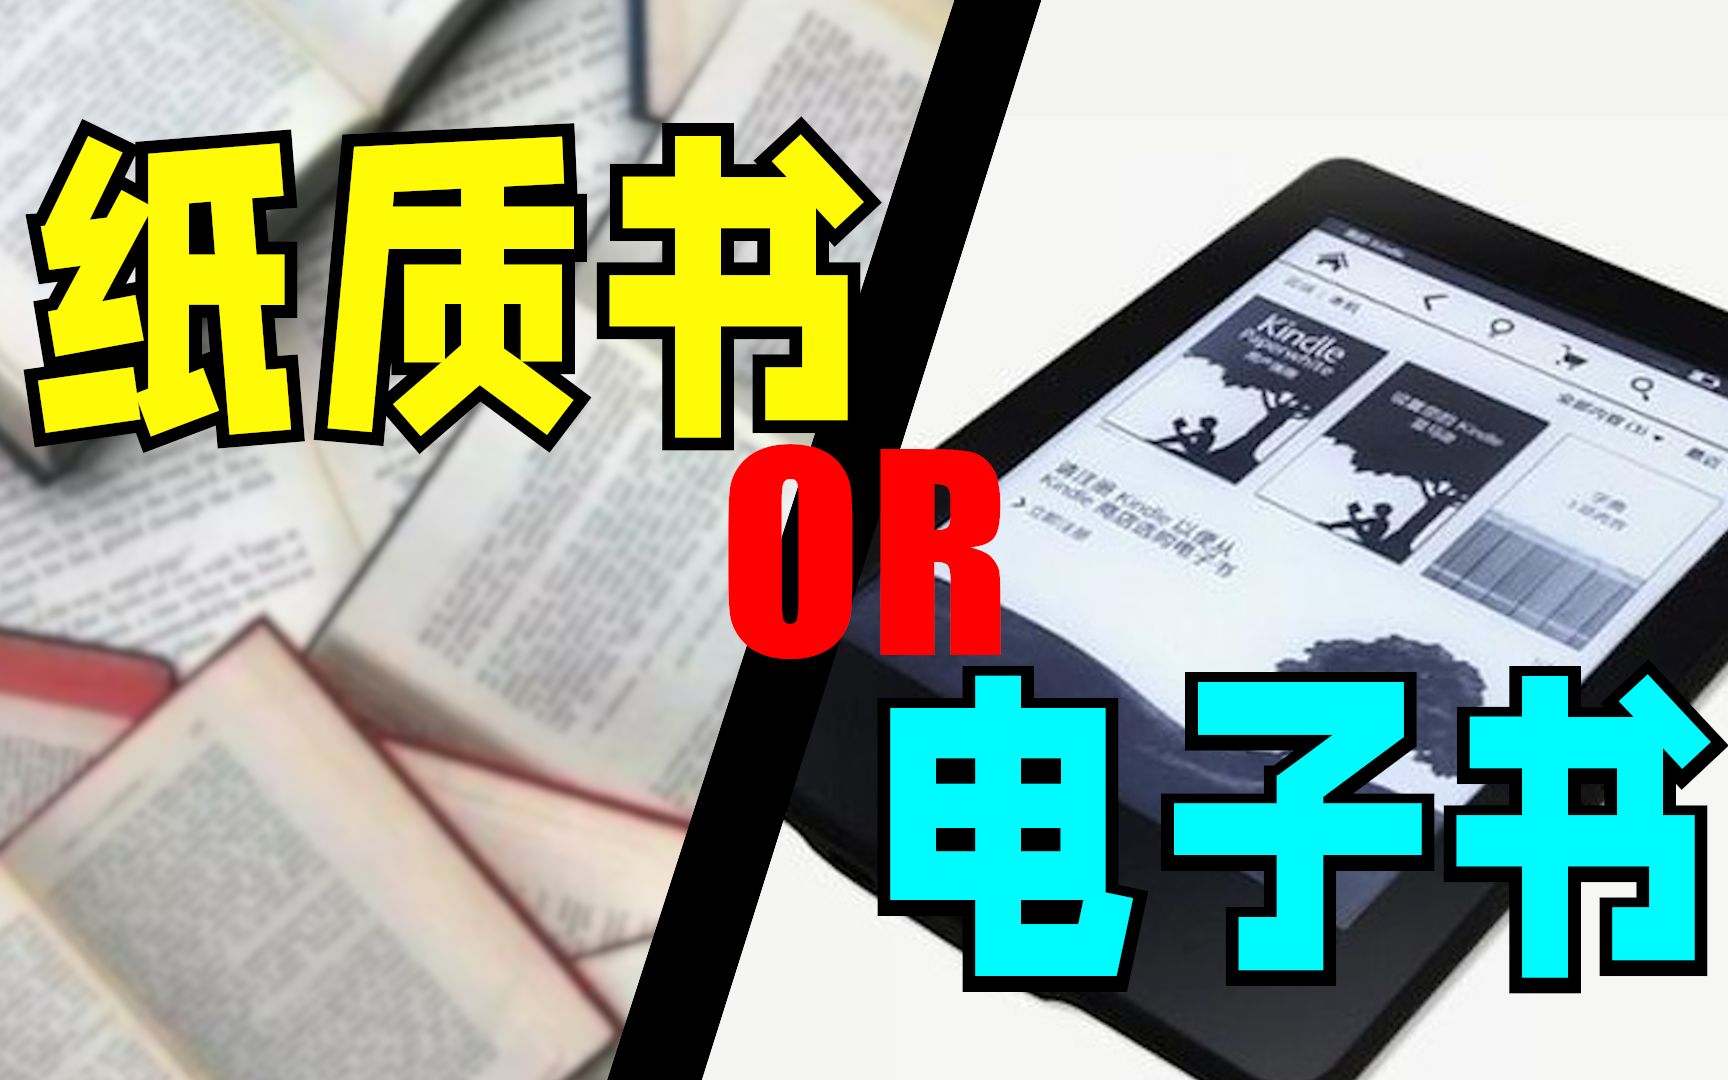 电子书如此受欢迎， 为何纸质书依然无法被取代？